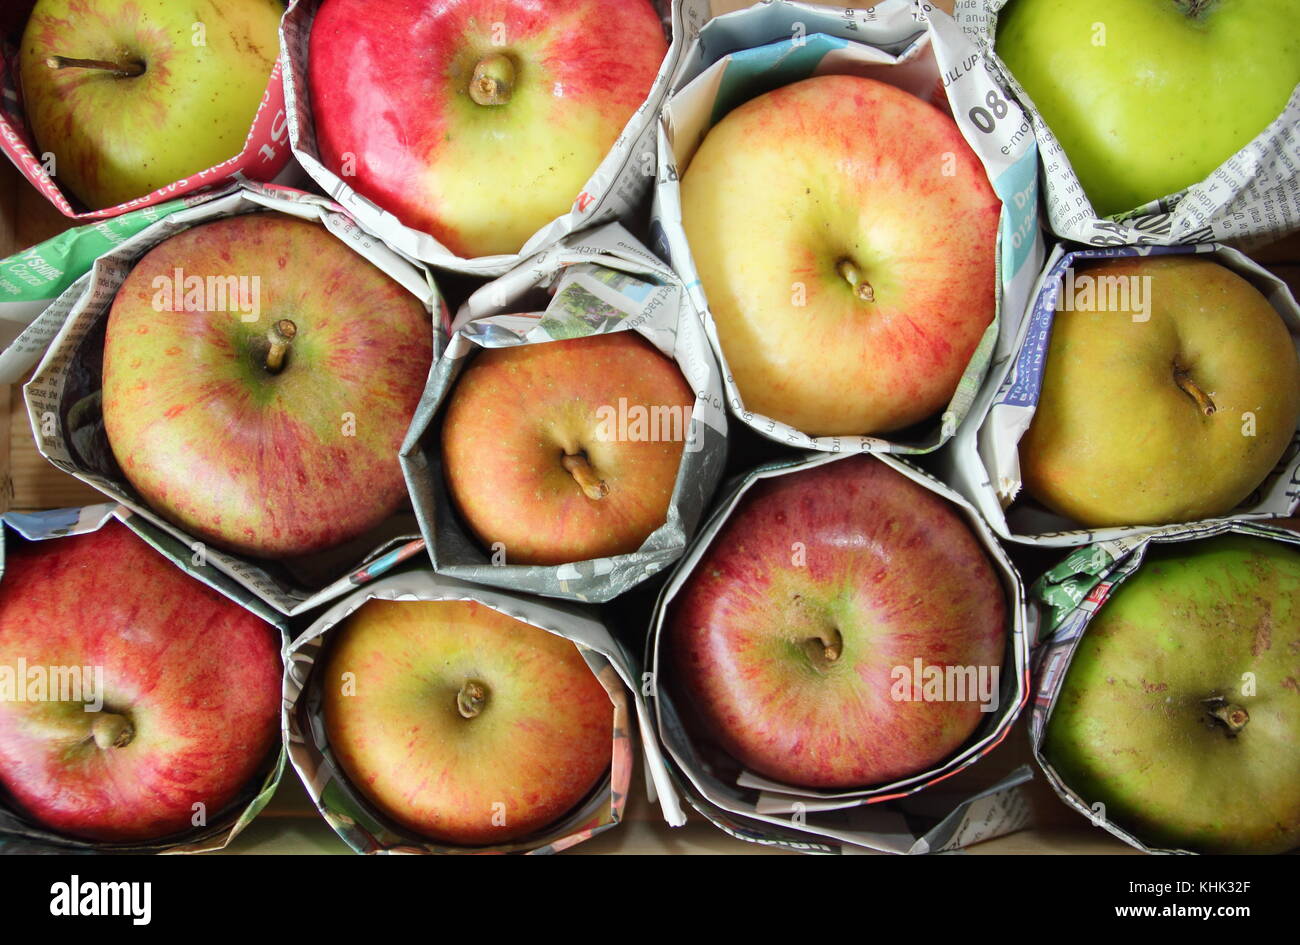 Pommes fraîchement récoltées (malus domestica) enveloppées dans un journal pour aider à prévenir la pourriture pendant l'entreposage, Royaume-Uni Banque D'Images